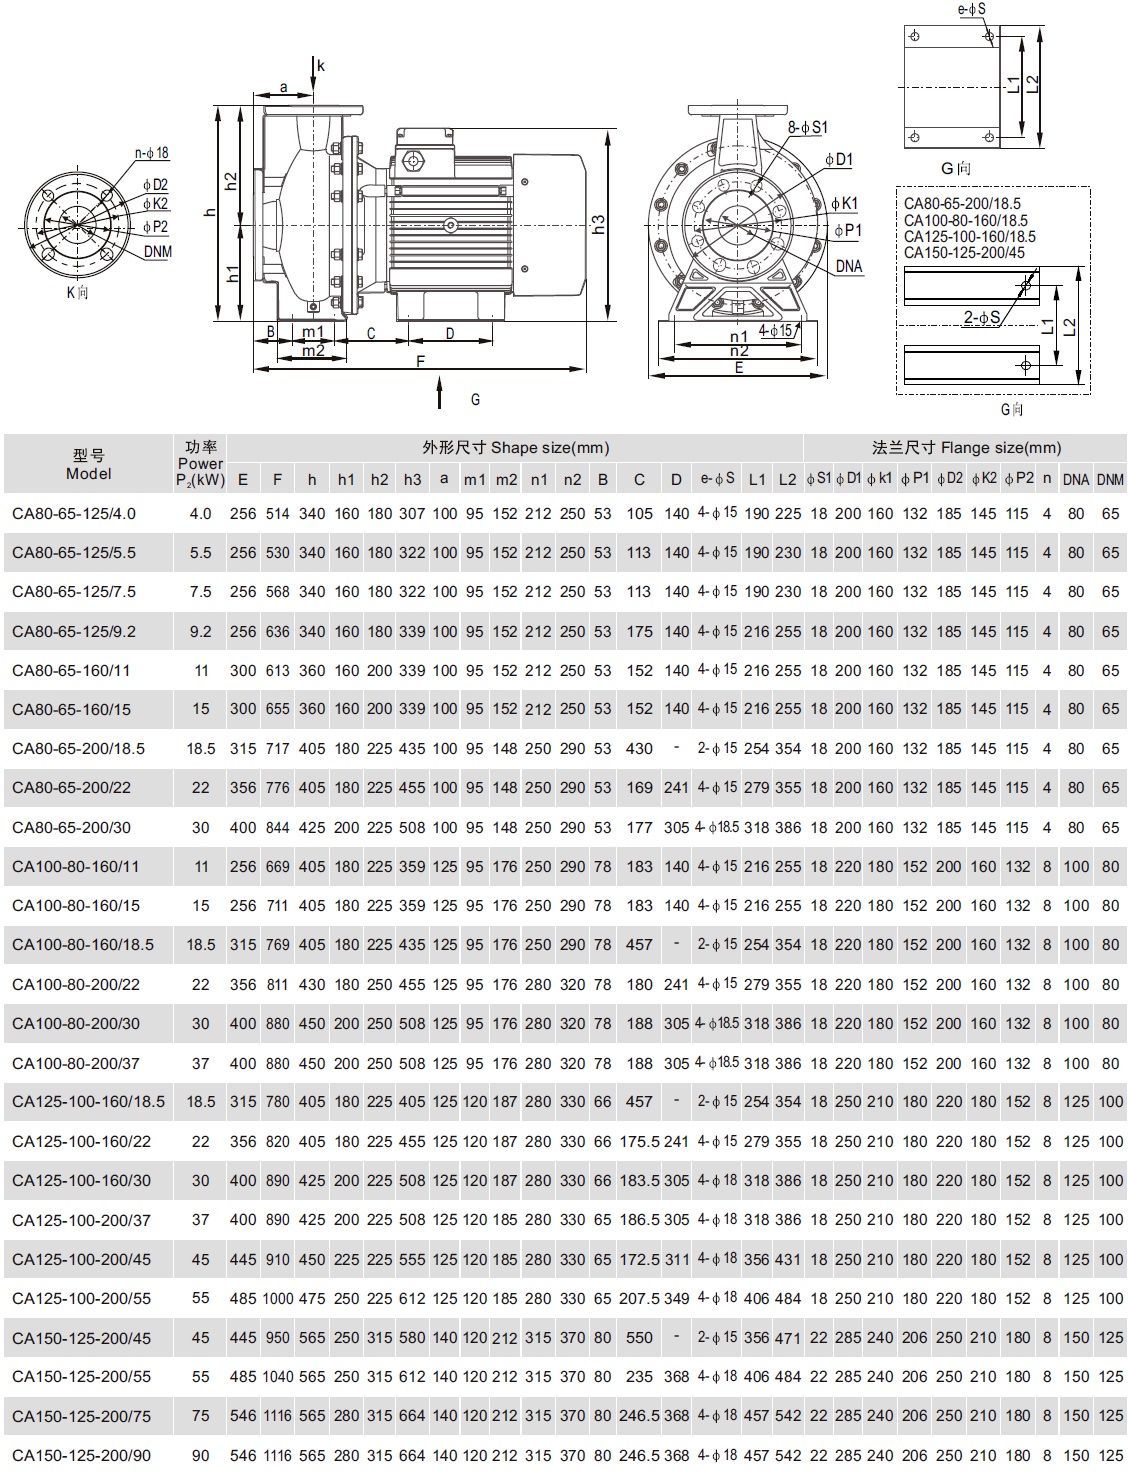 Розміри моноблочного відцентрового насоса СА150-125-200/45Т  